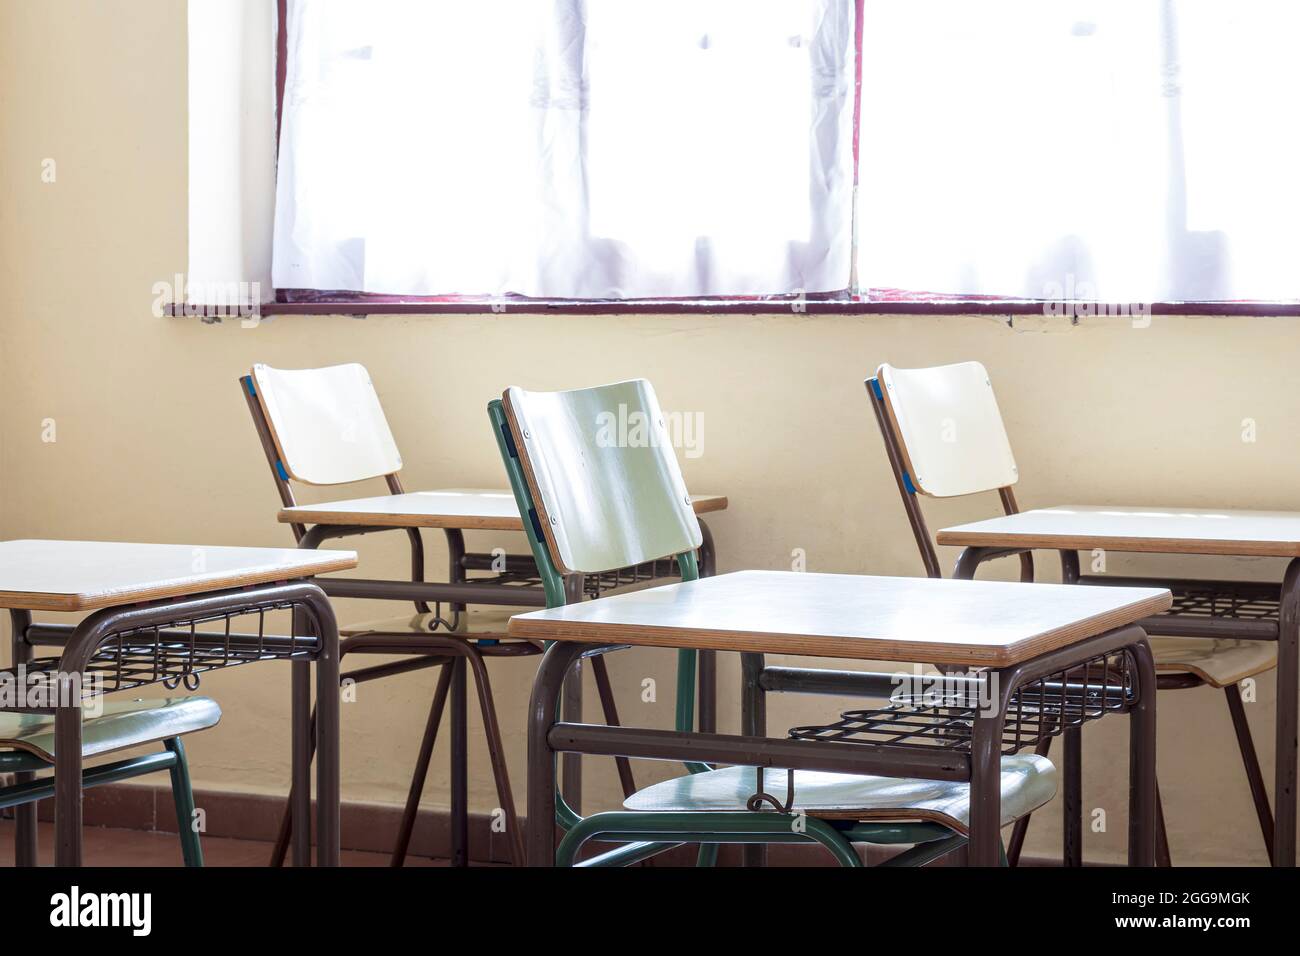 Photo de quelques chaises et tables dans une salle de classe d'une école maternelle.la photo est prise en format horizontal. Banque D'Images